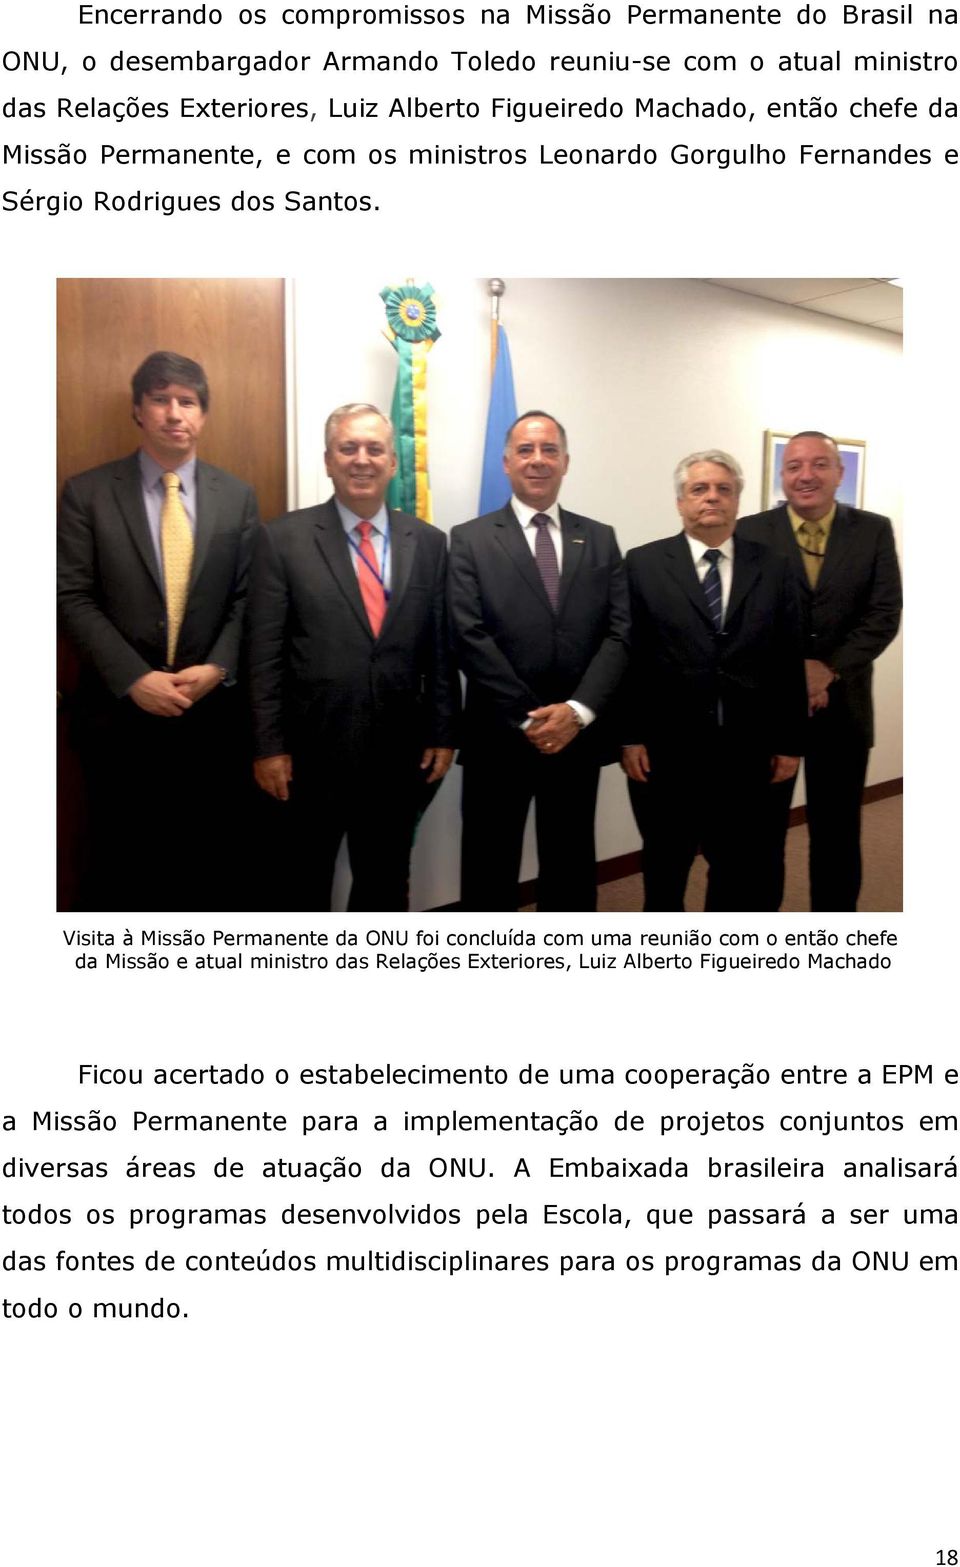 Visita à Missão Permanente da ONU foi concluída com uma reunião com o então chefe da Missão e atual ministro das Relações Exteriores, Luiz Alberto Figueiredo Machado Ficou acertado o estabelecimento